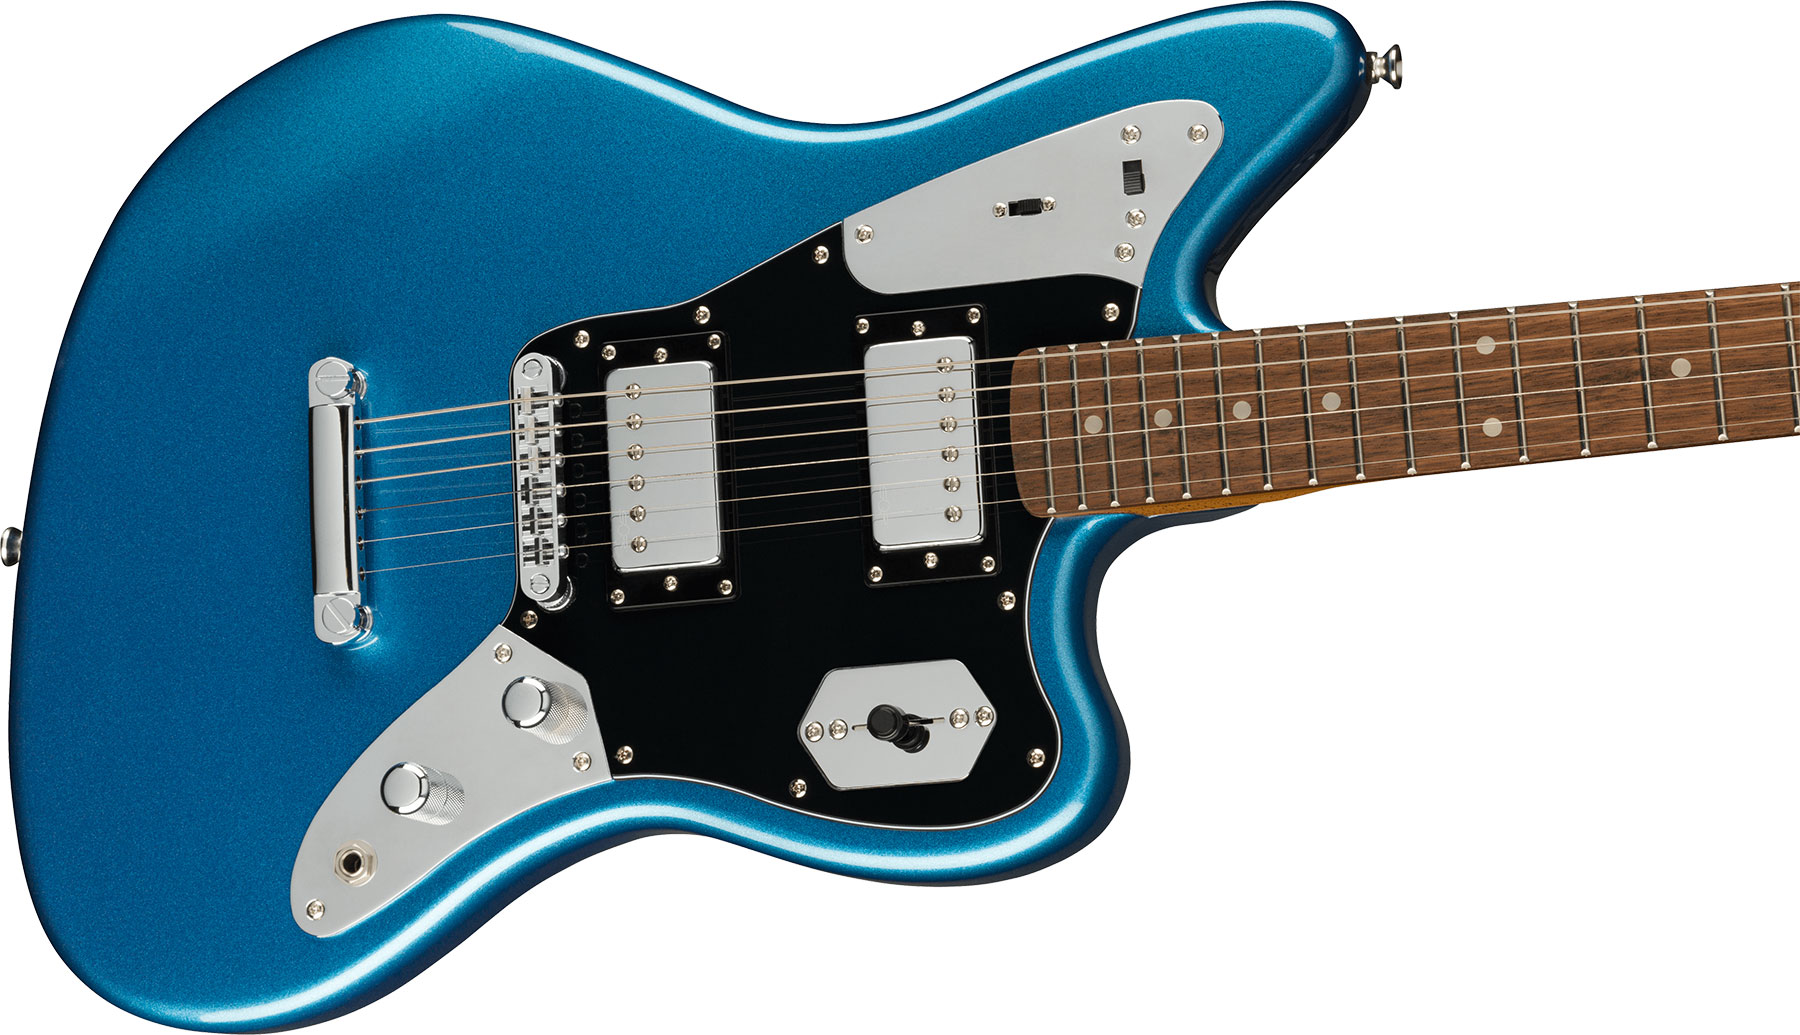 Squier Jaguar Contemporary Hh St Fsr Ltd Ht Lau - Lake Placid Blue - Retro rock electric guitar - Variation 2